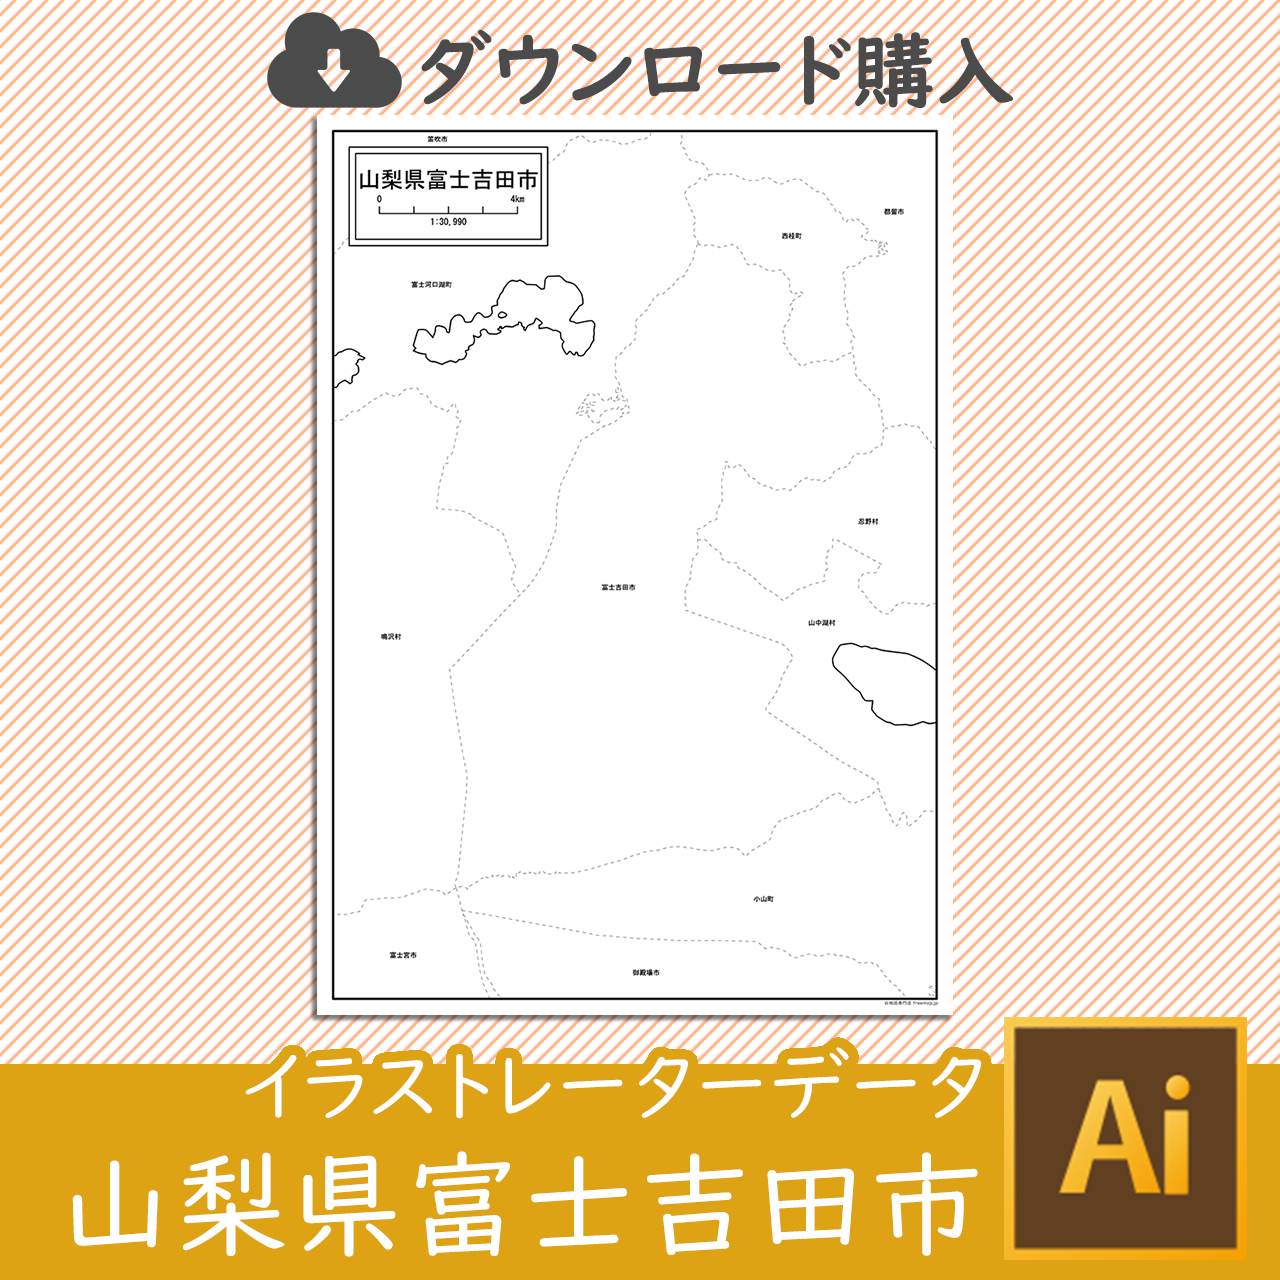 富士吉田市のaiデータのサムネイル画像